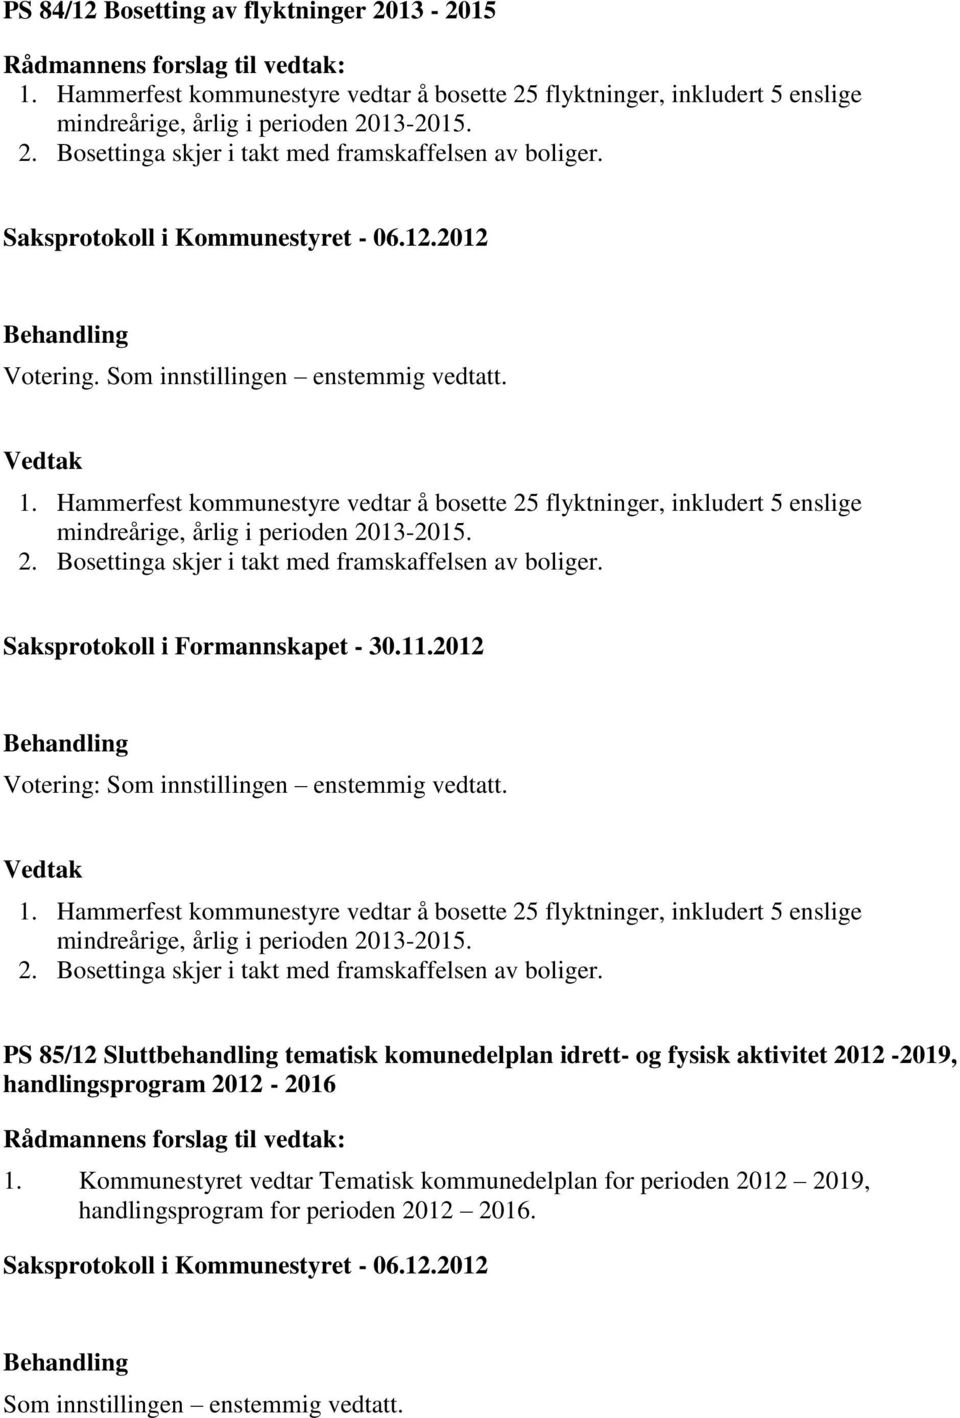 Saksprotokoll i Formannskapet - 30.11.2012 1. Hammerfest kommunestyre vedtar å bosette 25 flyktninger, inkludert 5 enslige mindreårige, årlig i perioden 2013-2015. 2. Bosettinga skjer i takt med framskaffelsen av boliger.